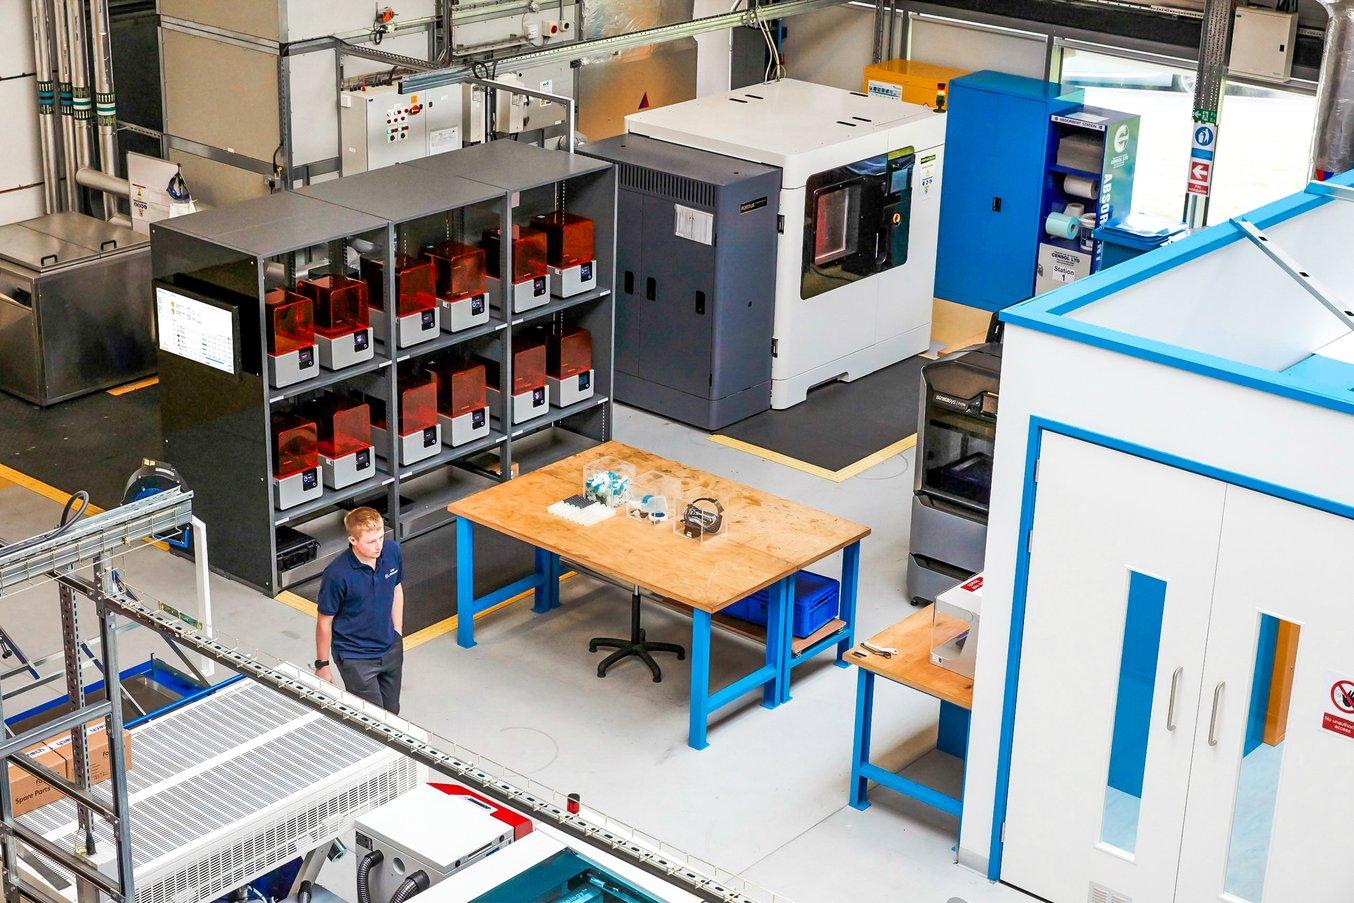 AMRC de l'Université de Sheffield utilise une flotte de 12 imprimantes 3D SLA pour la plupart des applications d'ingénierie et de production industrielle, et cinq imprimantes FDM industrielles sont consacrées aux impressions de pièces de grande taille.